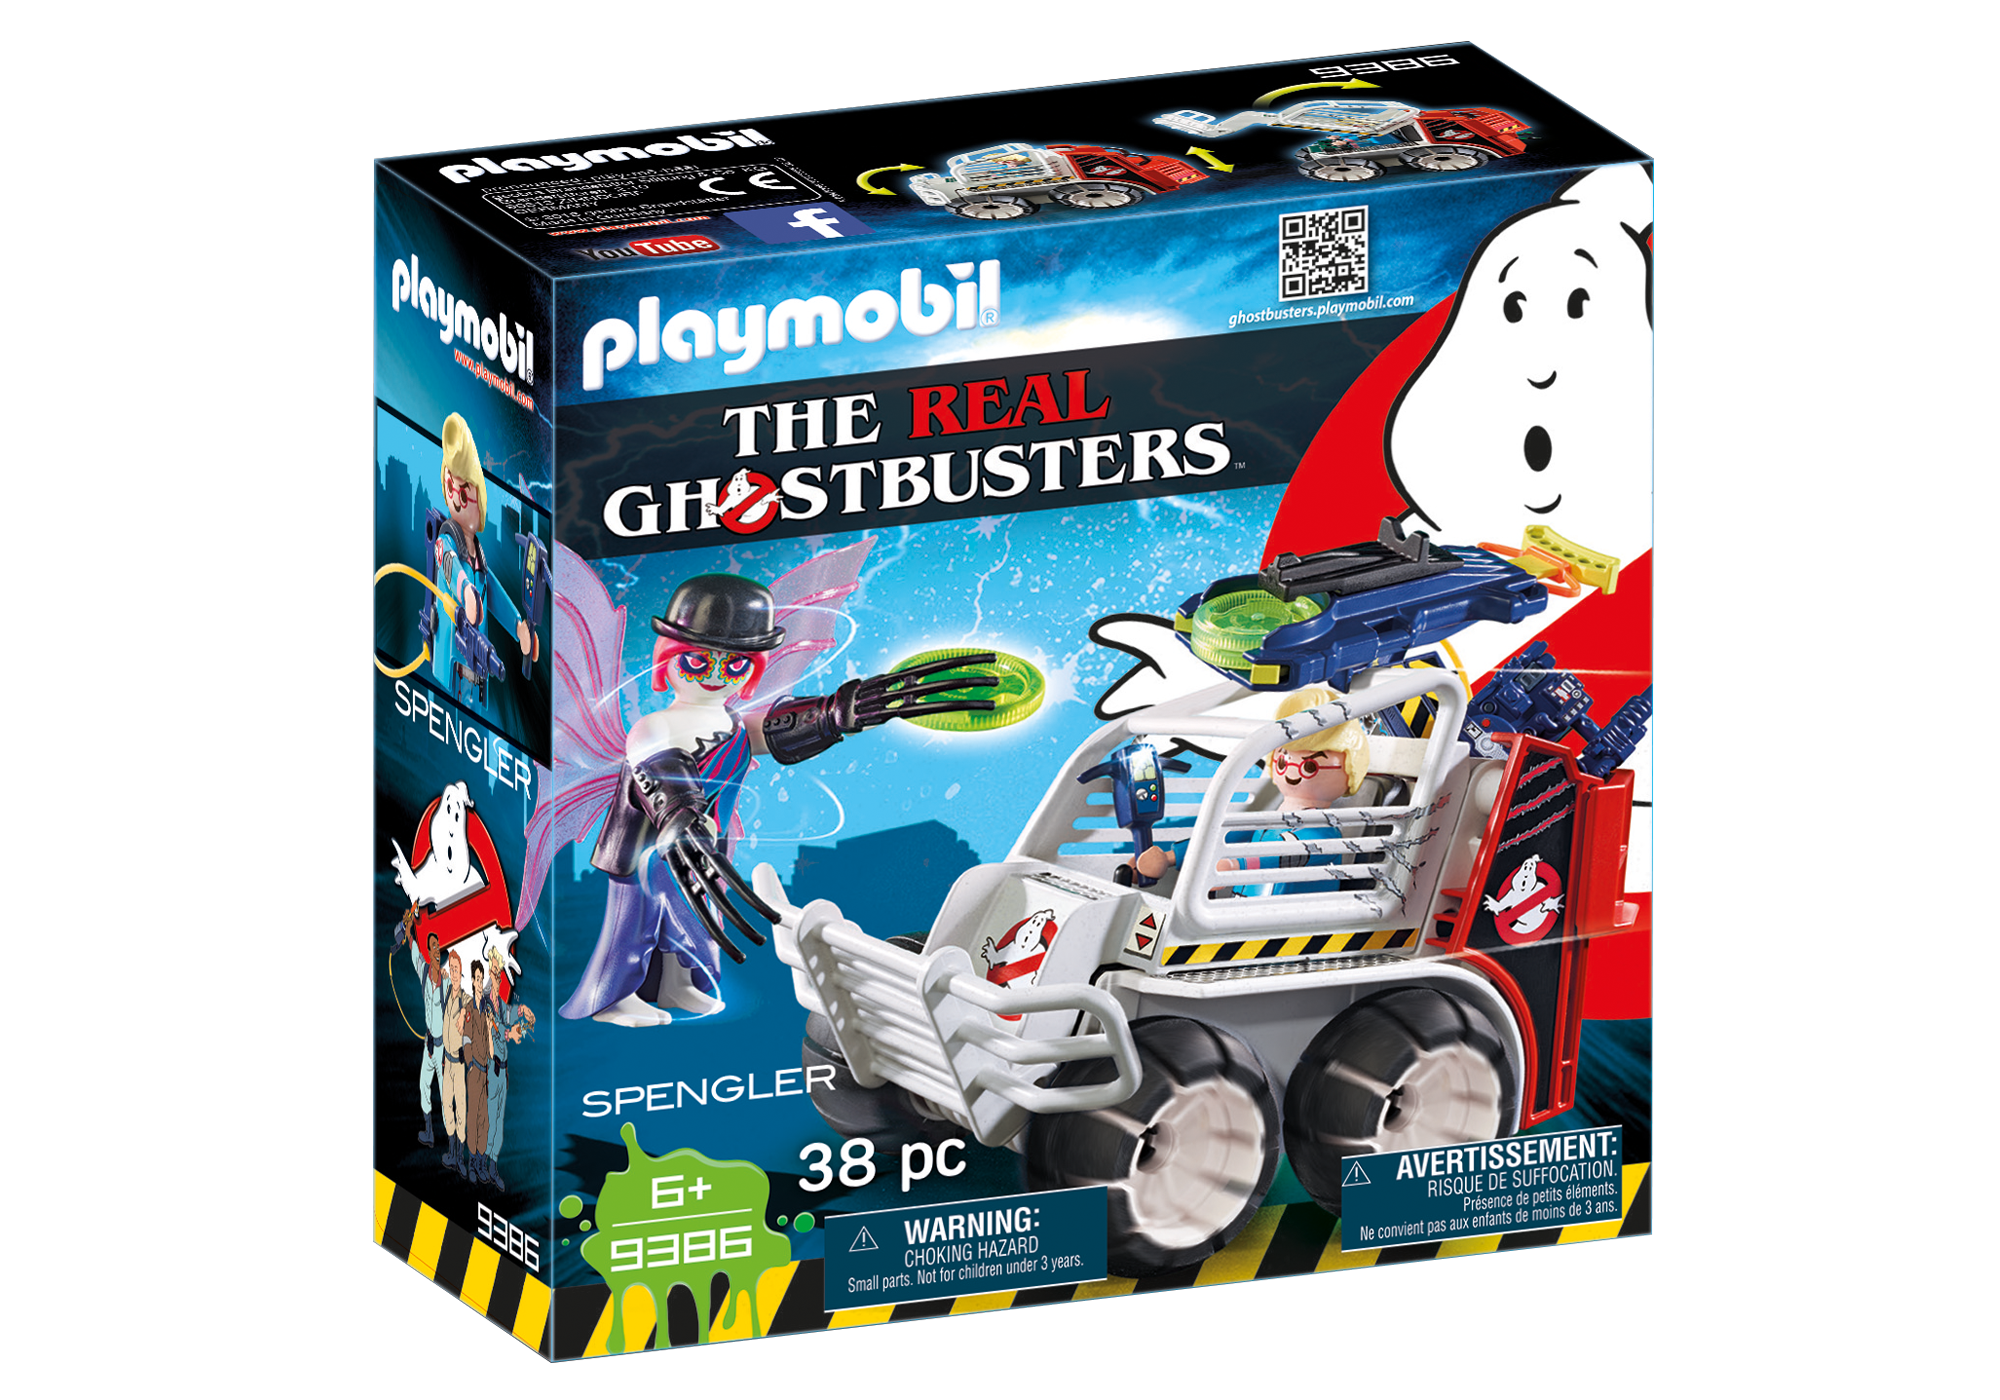 Playmobil Ghostbusters - Page 2 9386_product_box_front?locale=de-DE,de,*&$pdp_product_main_xl$